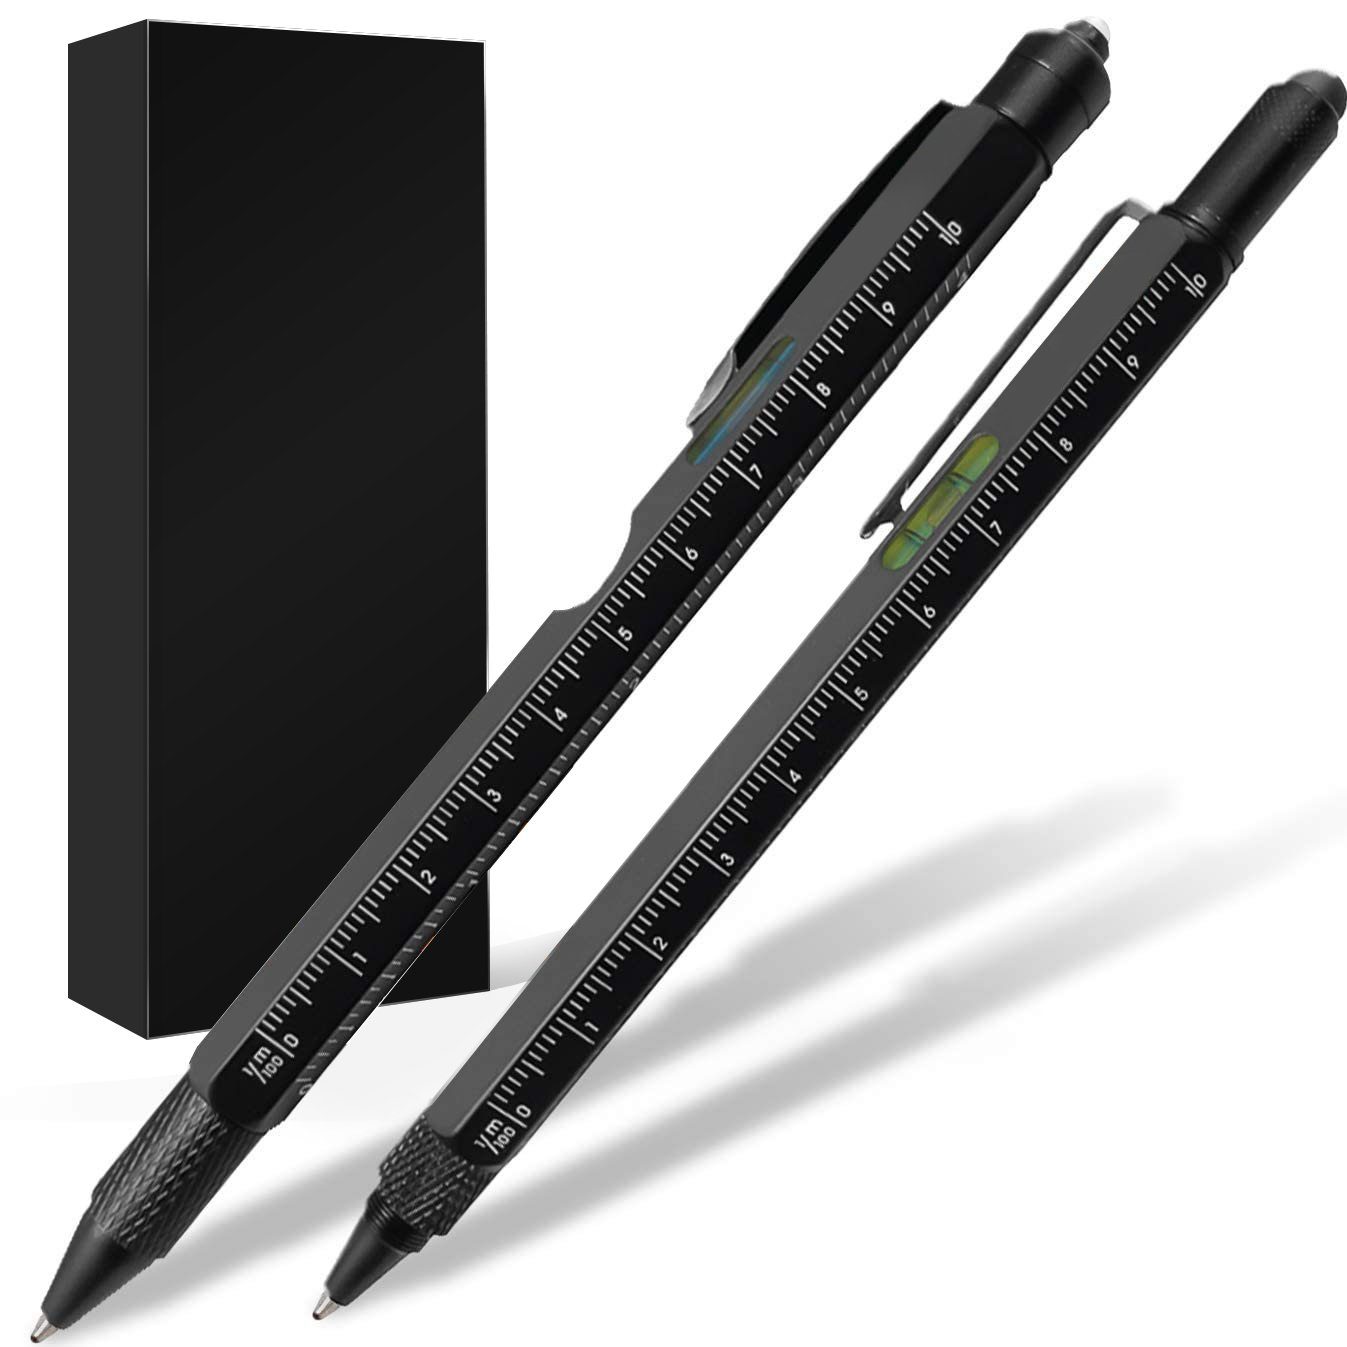 Vaxiuja Kugelschreiber LED-Licht, Multi-Tool Lineal Set - Pen 2Pc Touchscreen-Stift